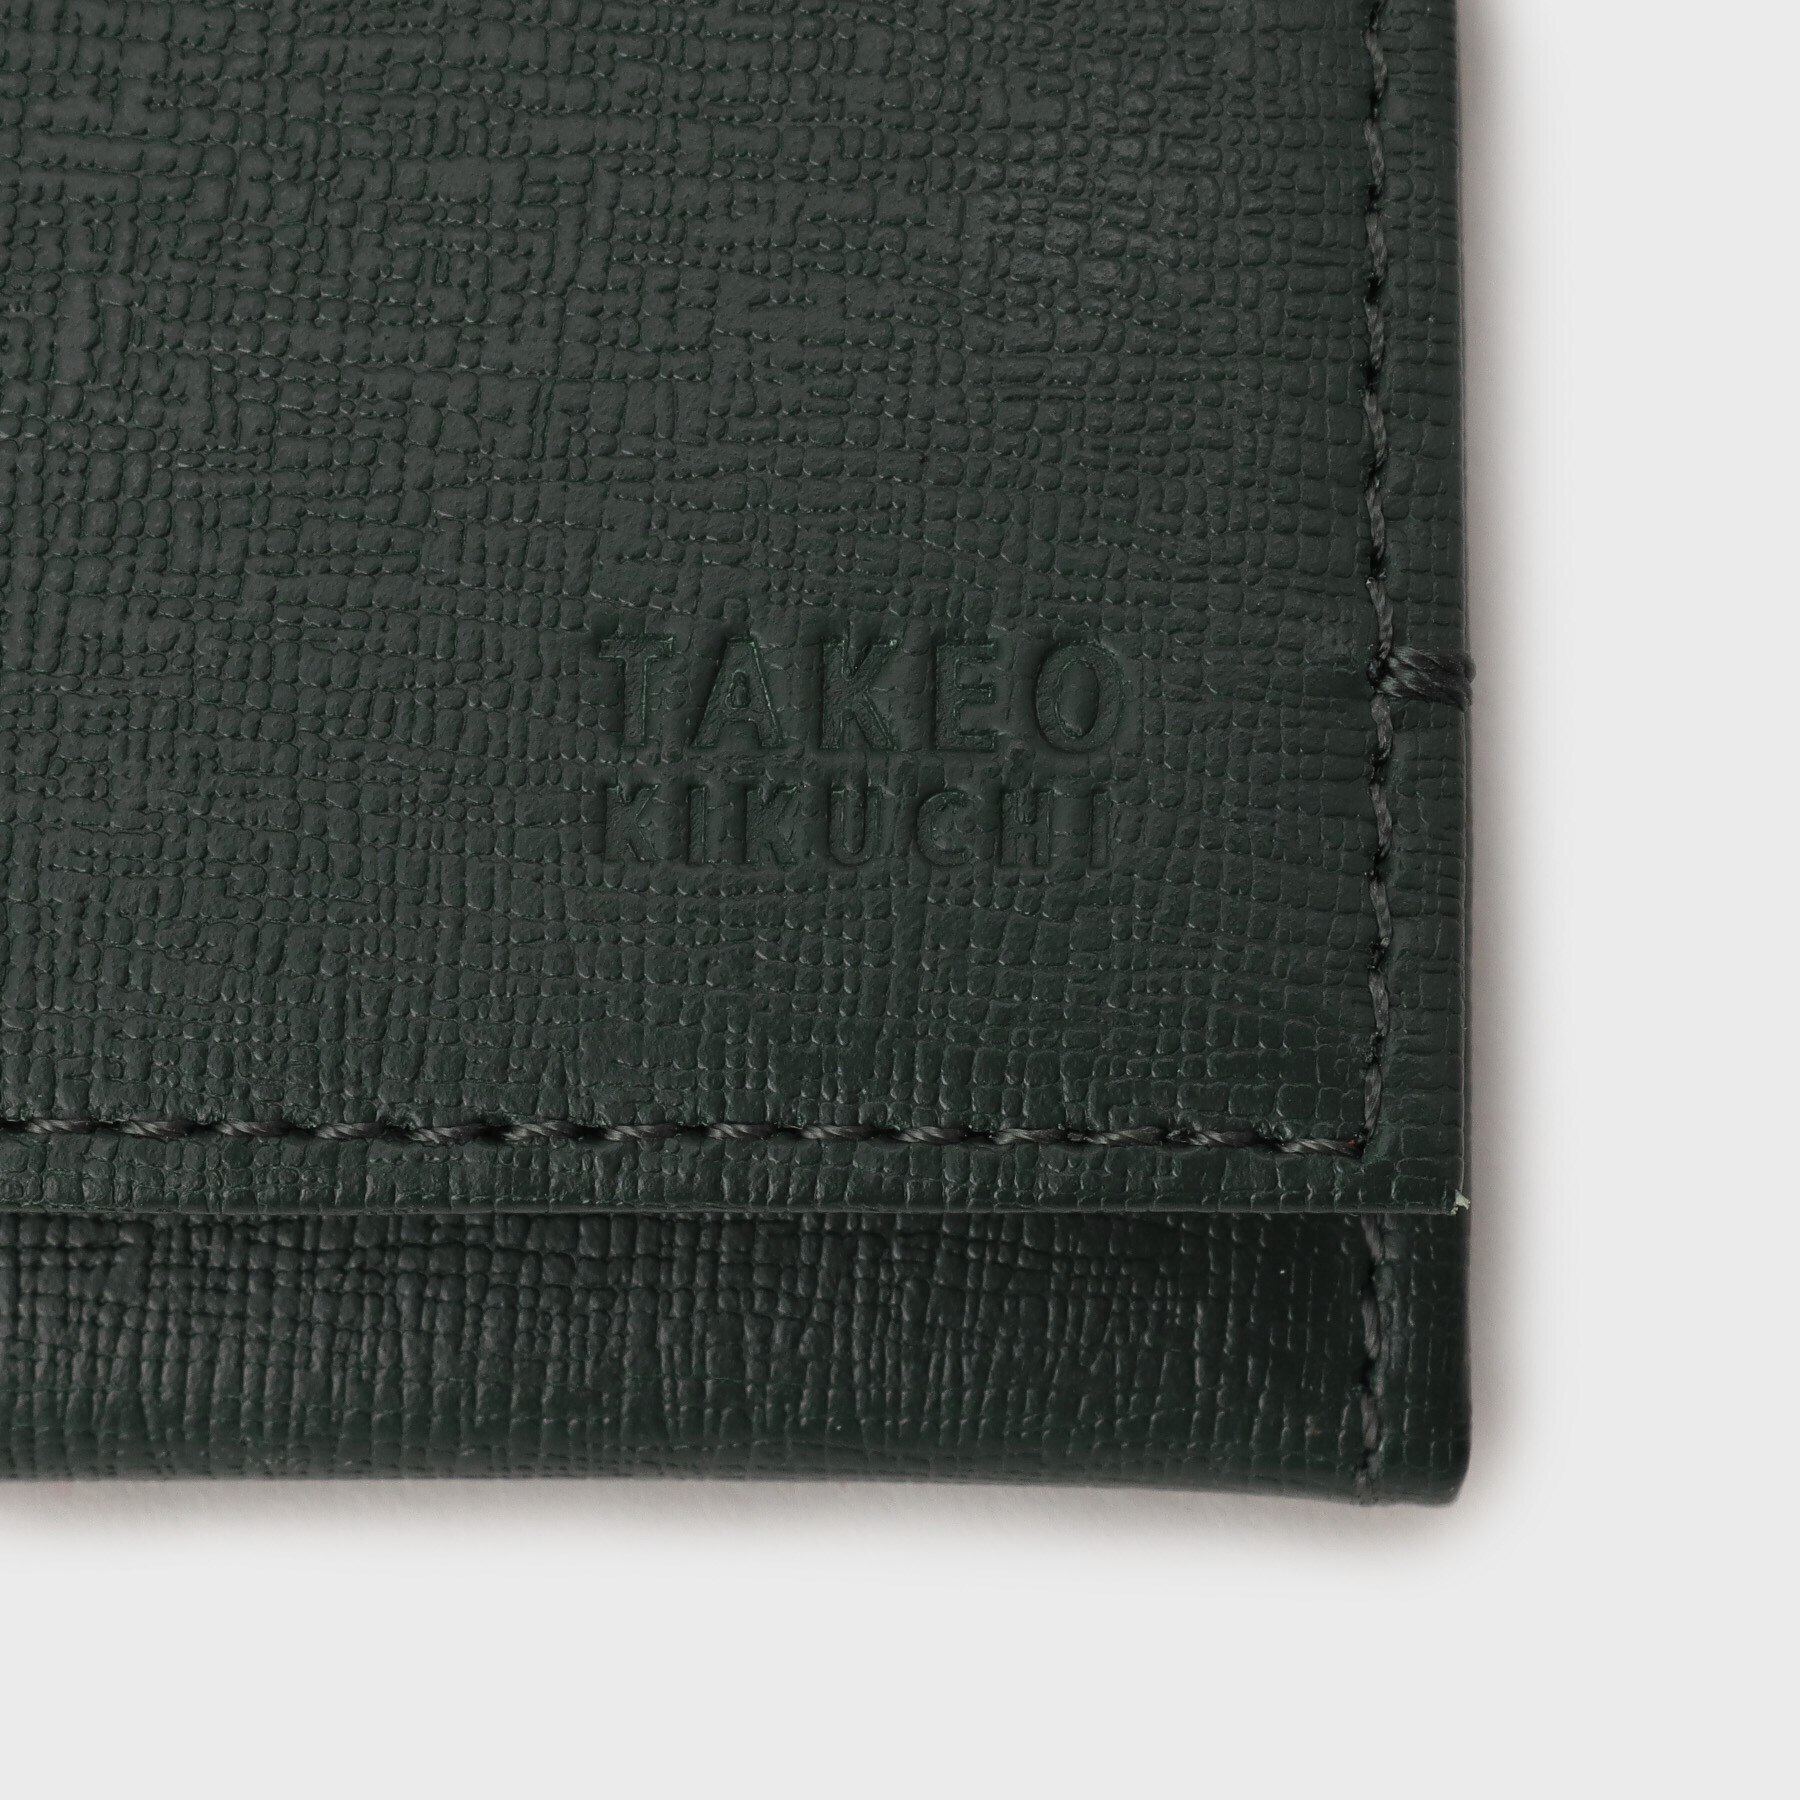 カード収納に強い】配色型押しレザー長財布|TAKEO KIKUCHI